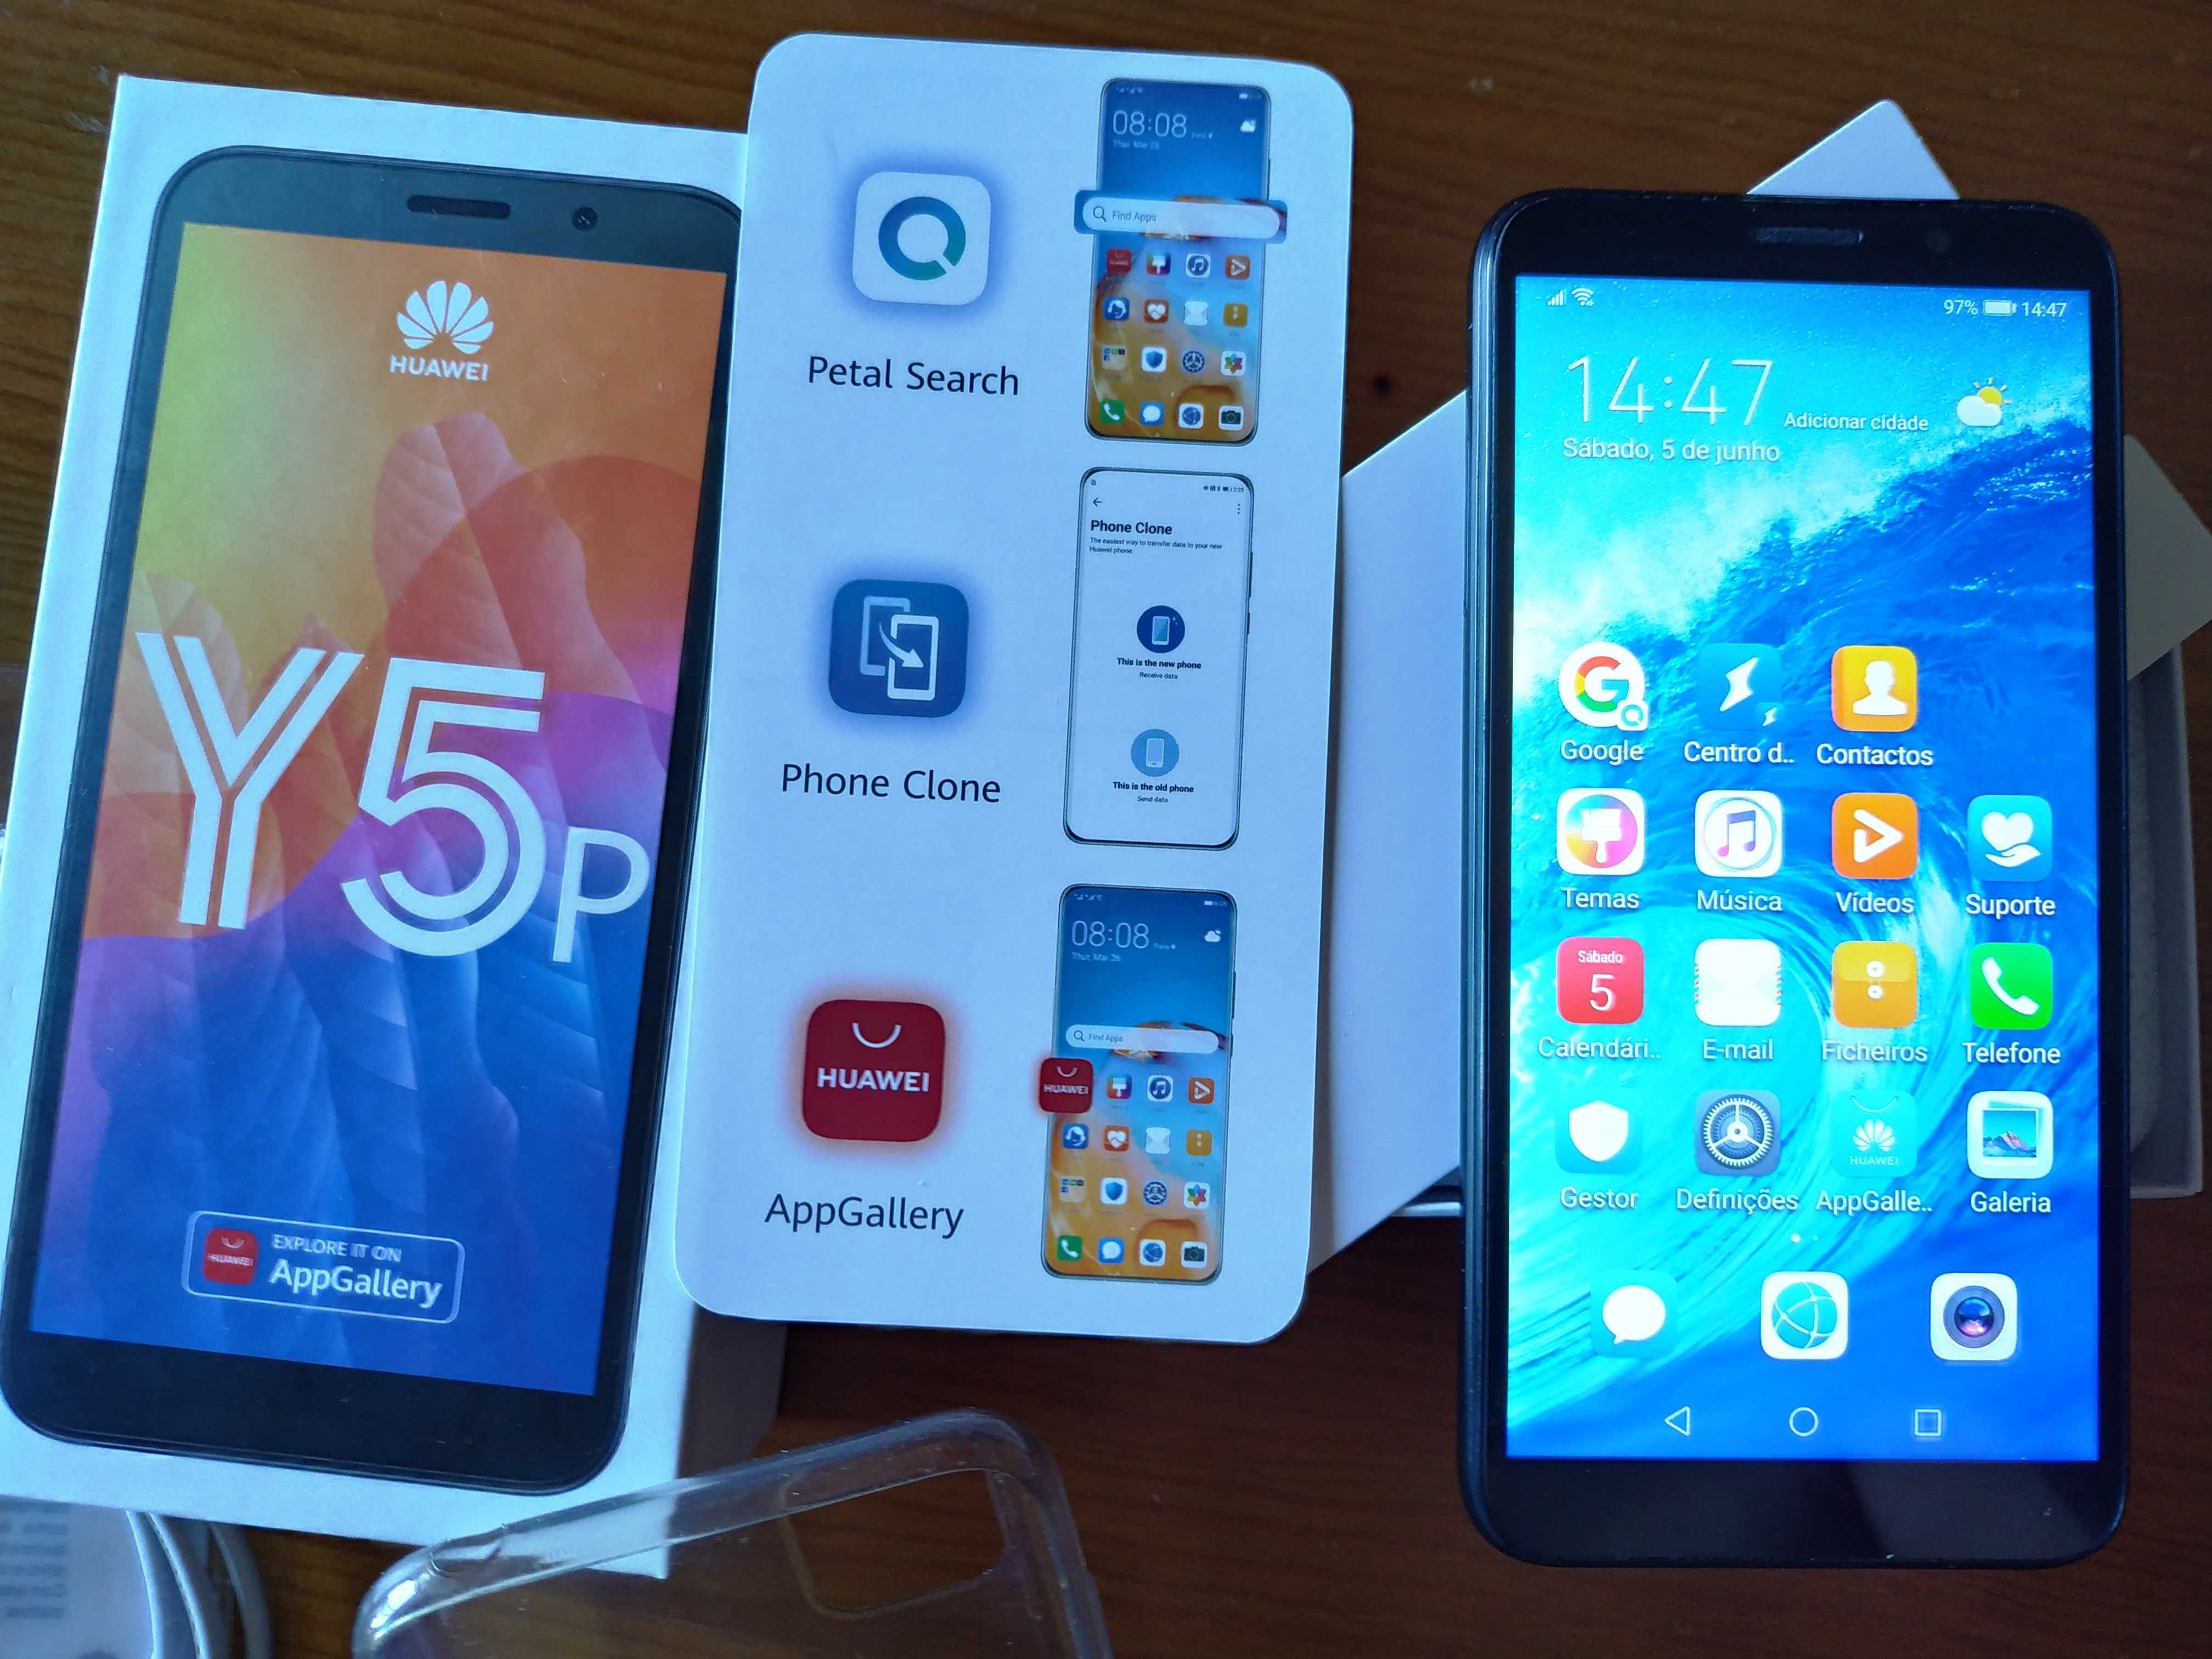 Smartphone Huawei Y5 P - Como novo